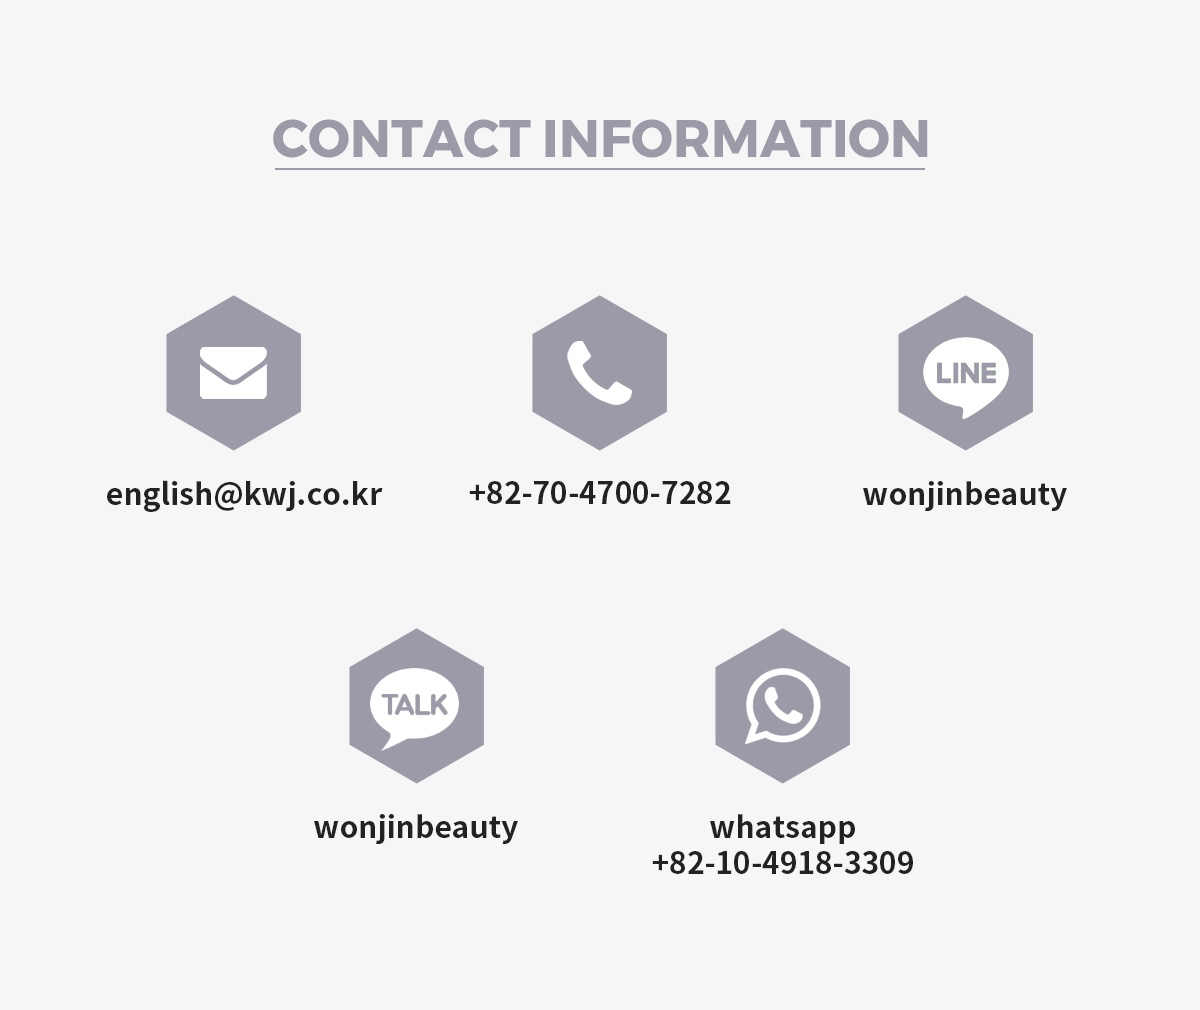 Contact Information english@kwj.co.krr +82-70-4700-7282 line wonjinbeauty kakao wonjinbeauty whatsapp +82-10-4918-3309